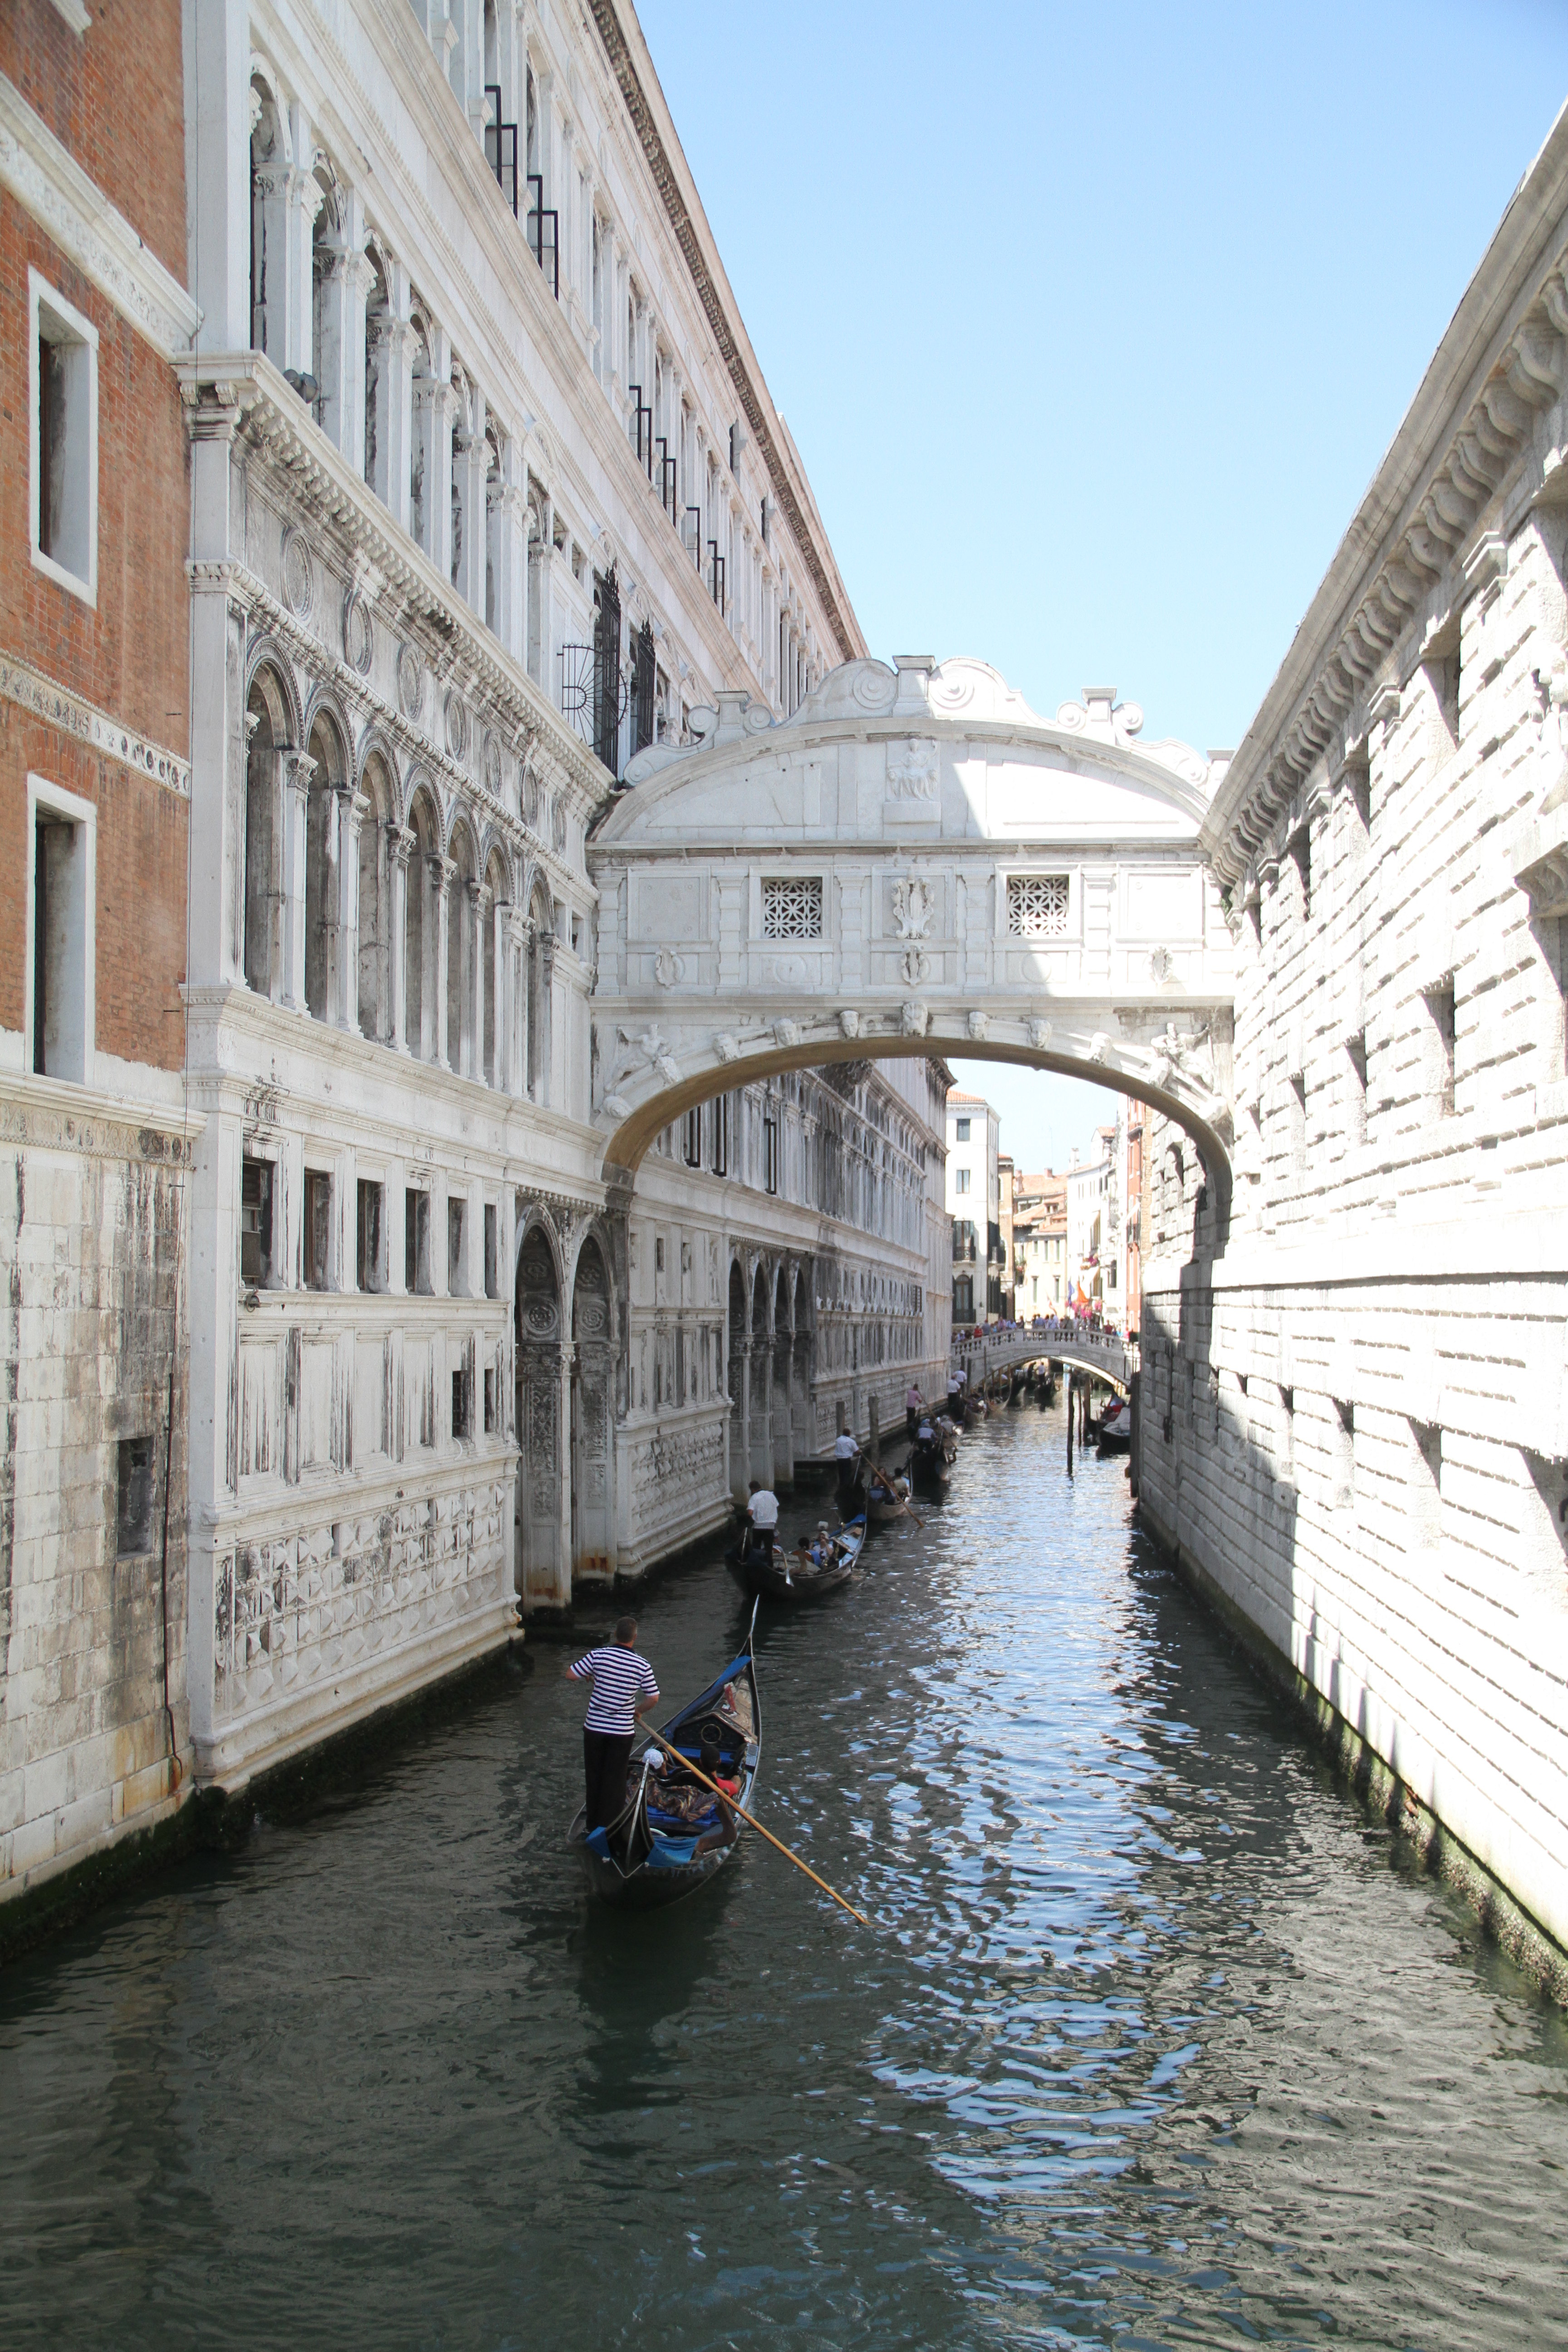 【携程攻略】威尼斯叹息桥适合商务旅行旅游吗,叹息桥商务旅行景点